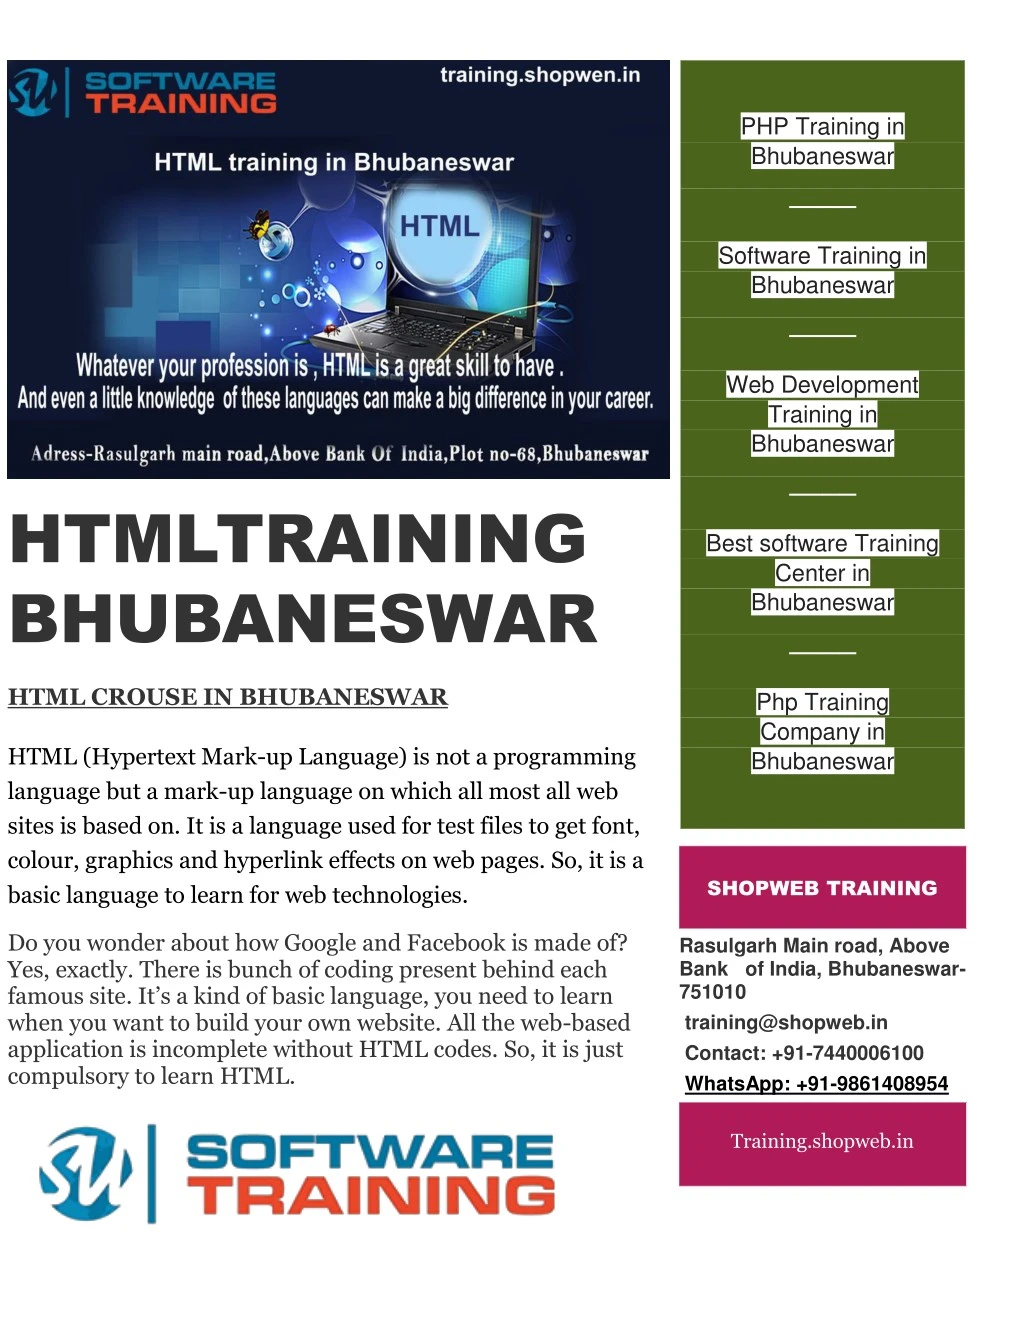 php training in bhubaneswar